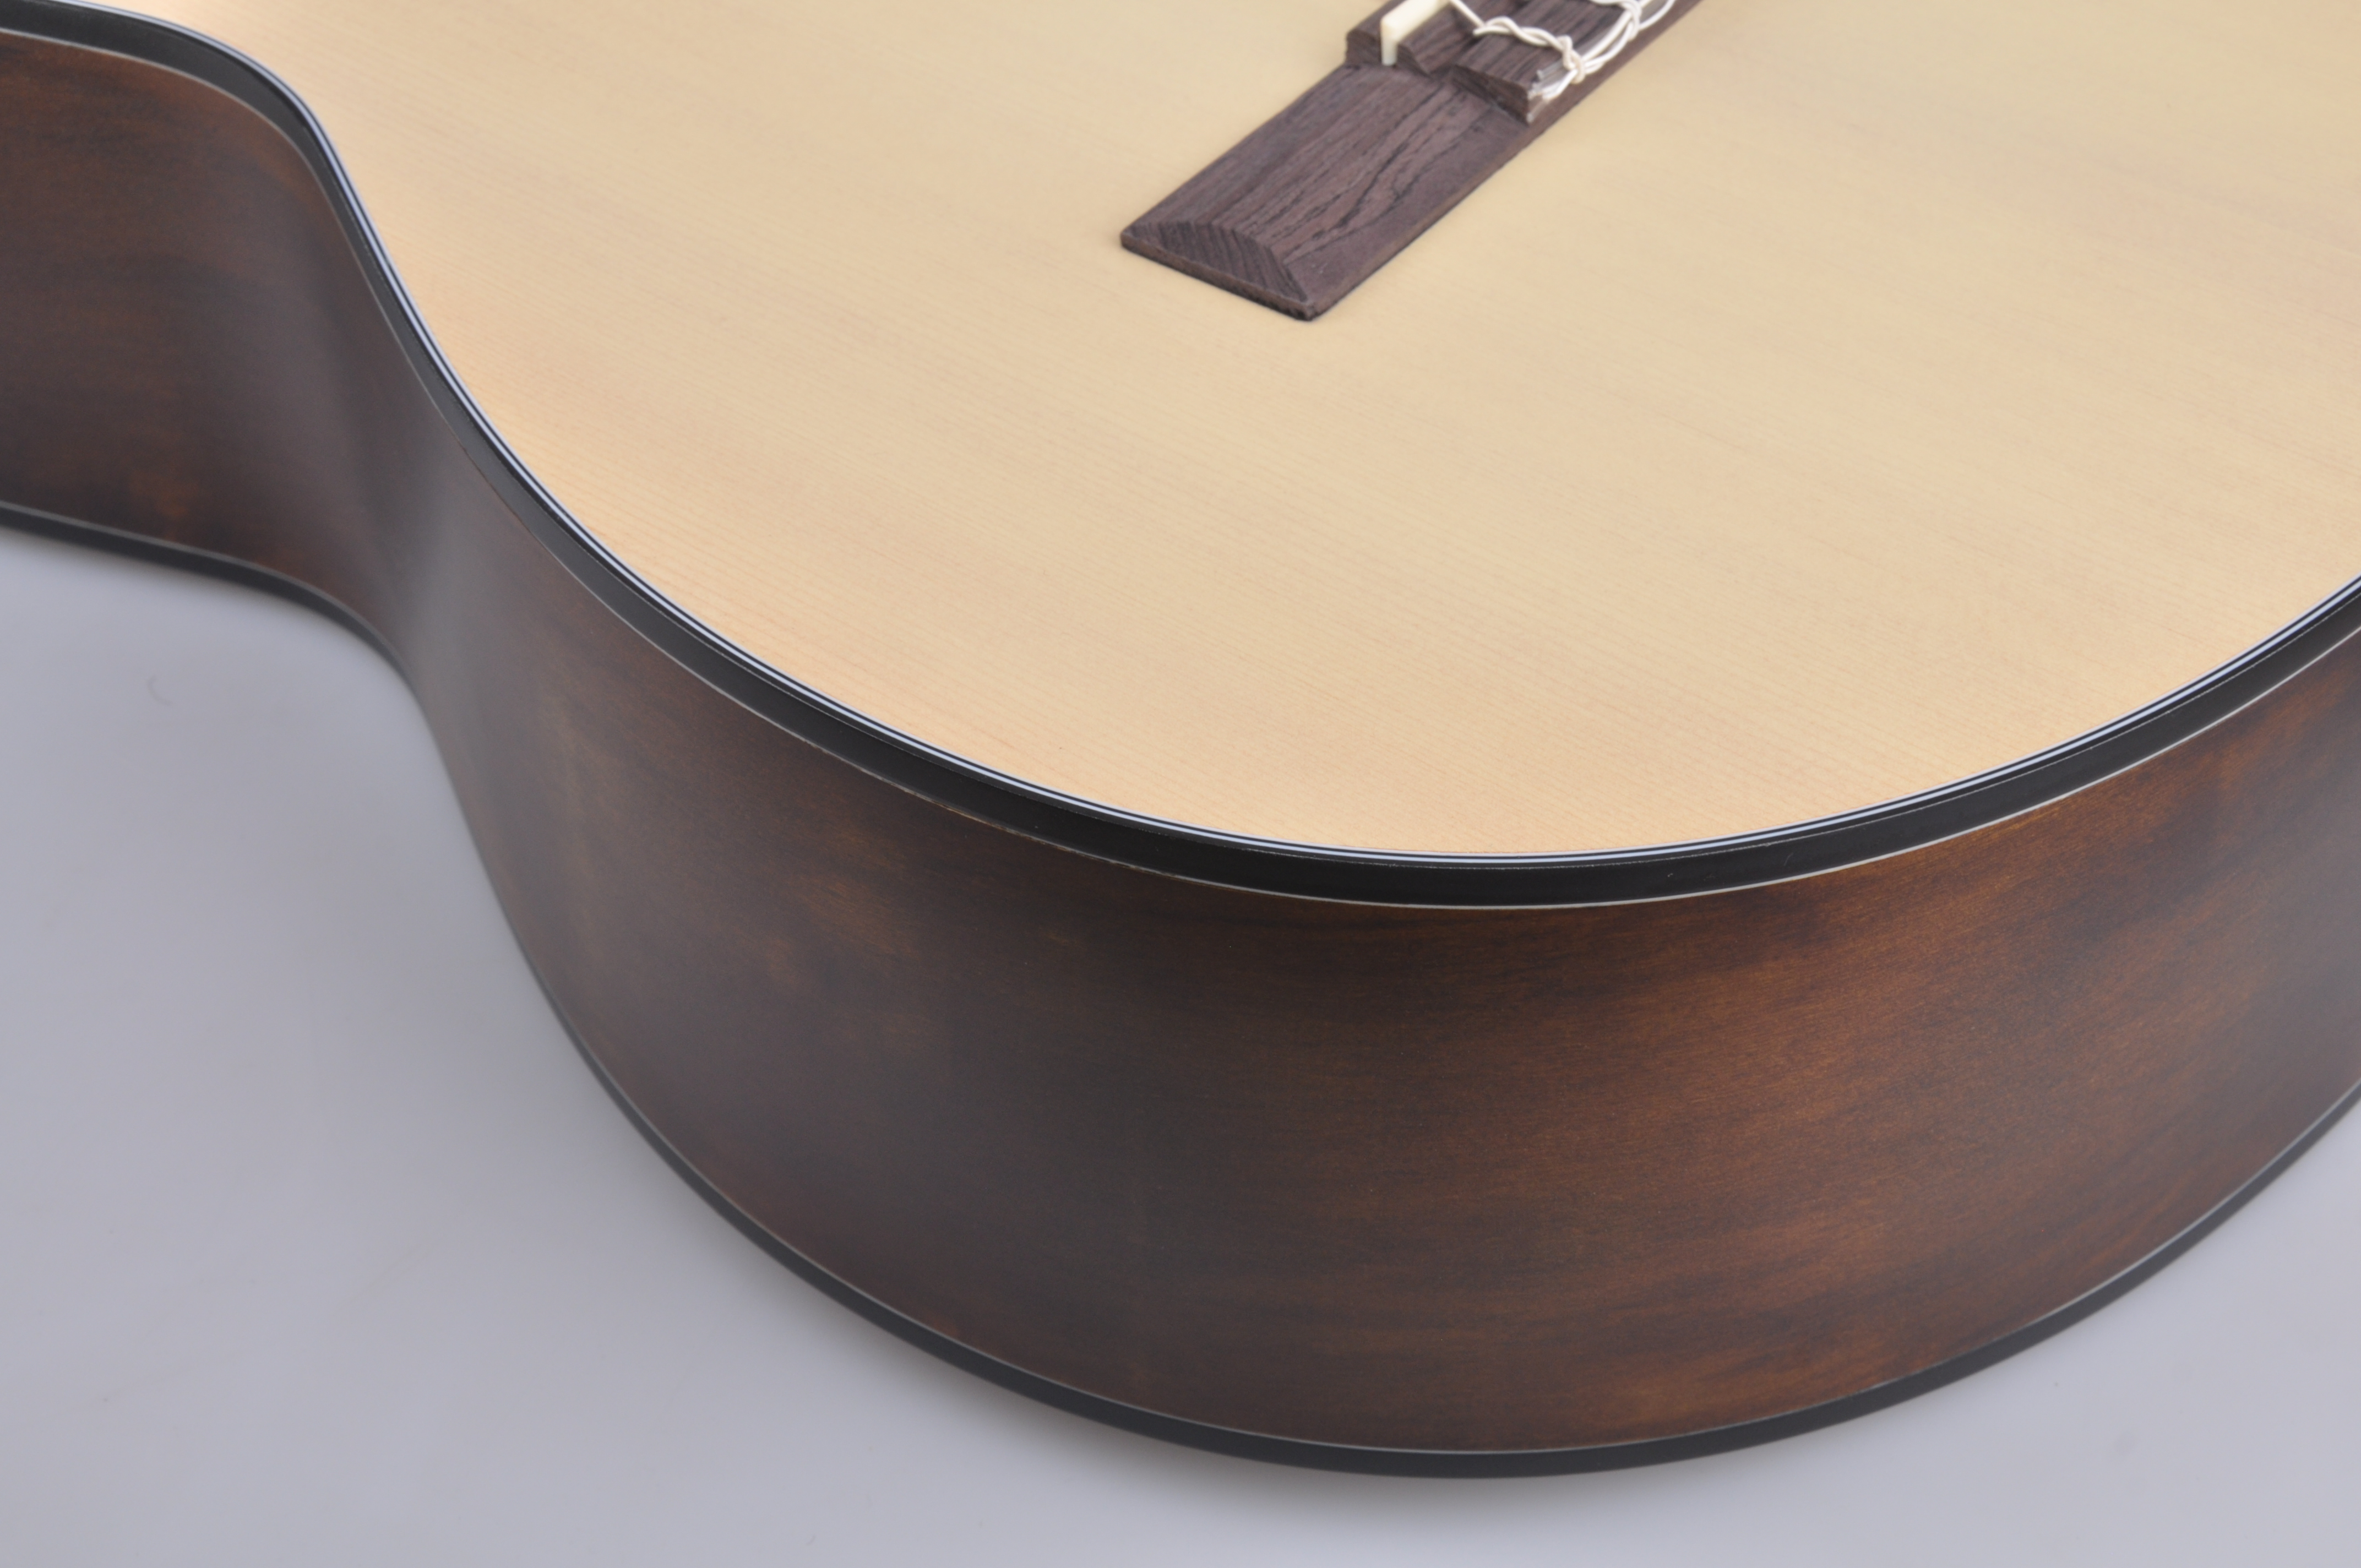 39-дюймовая классическая гитара цвета природы ABS (ACM-H10)